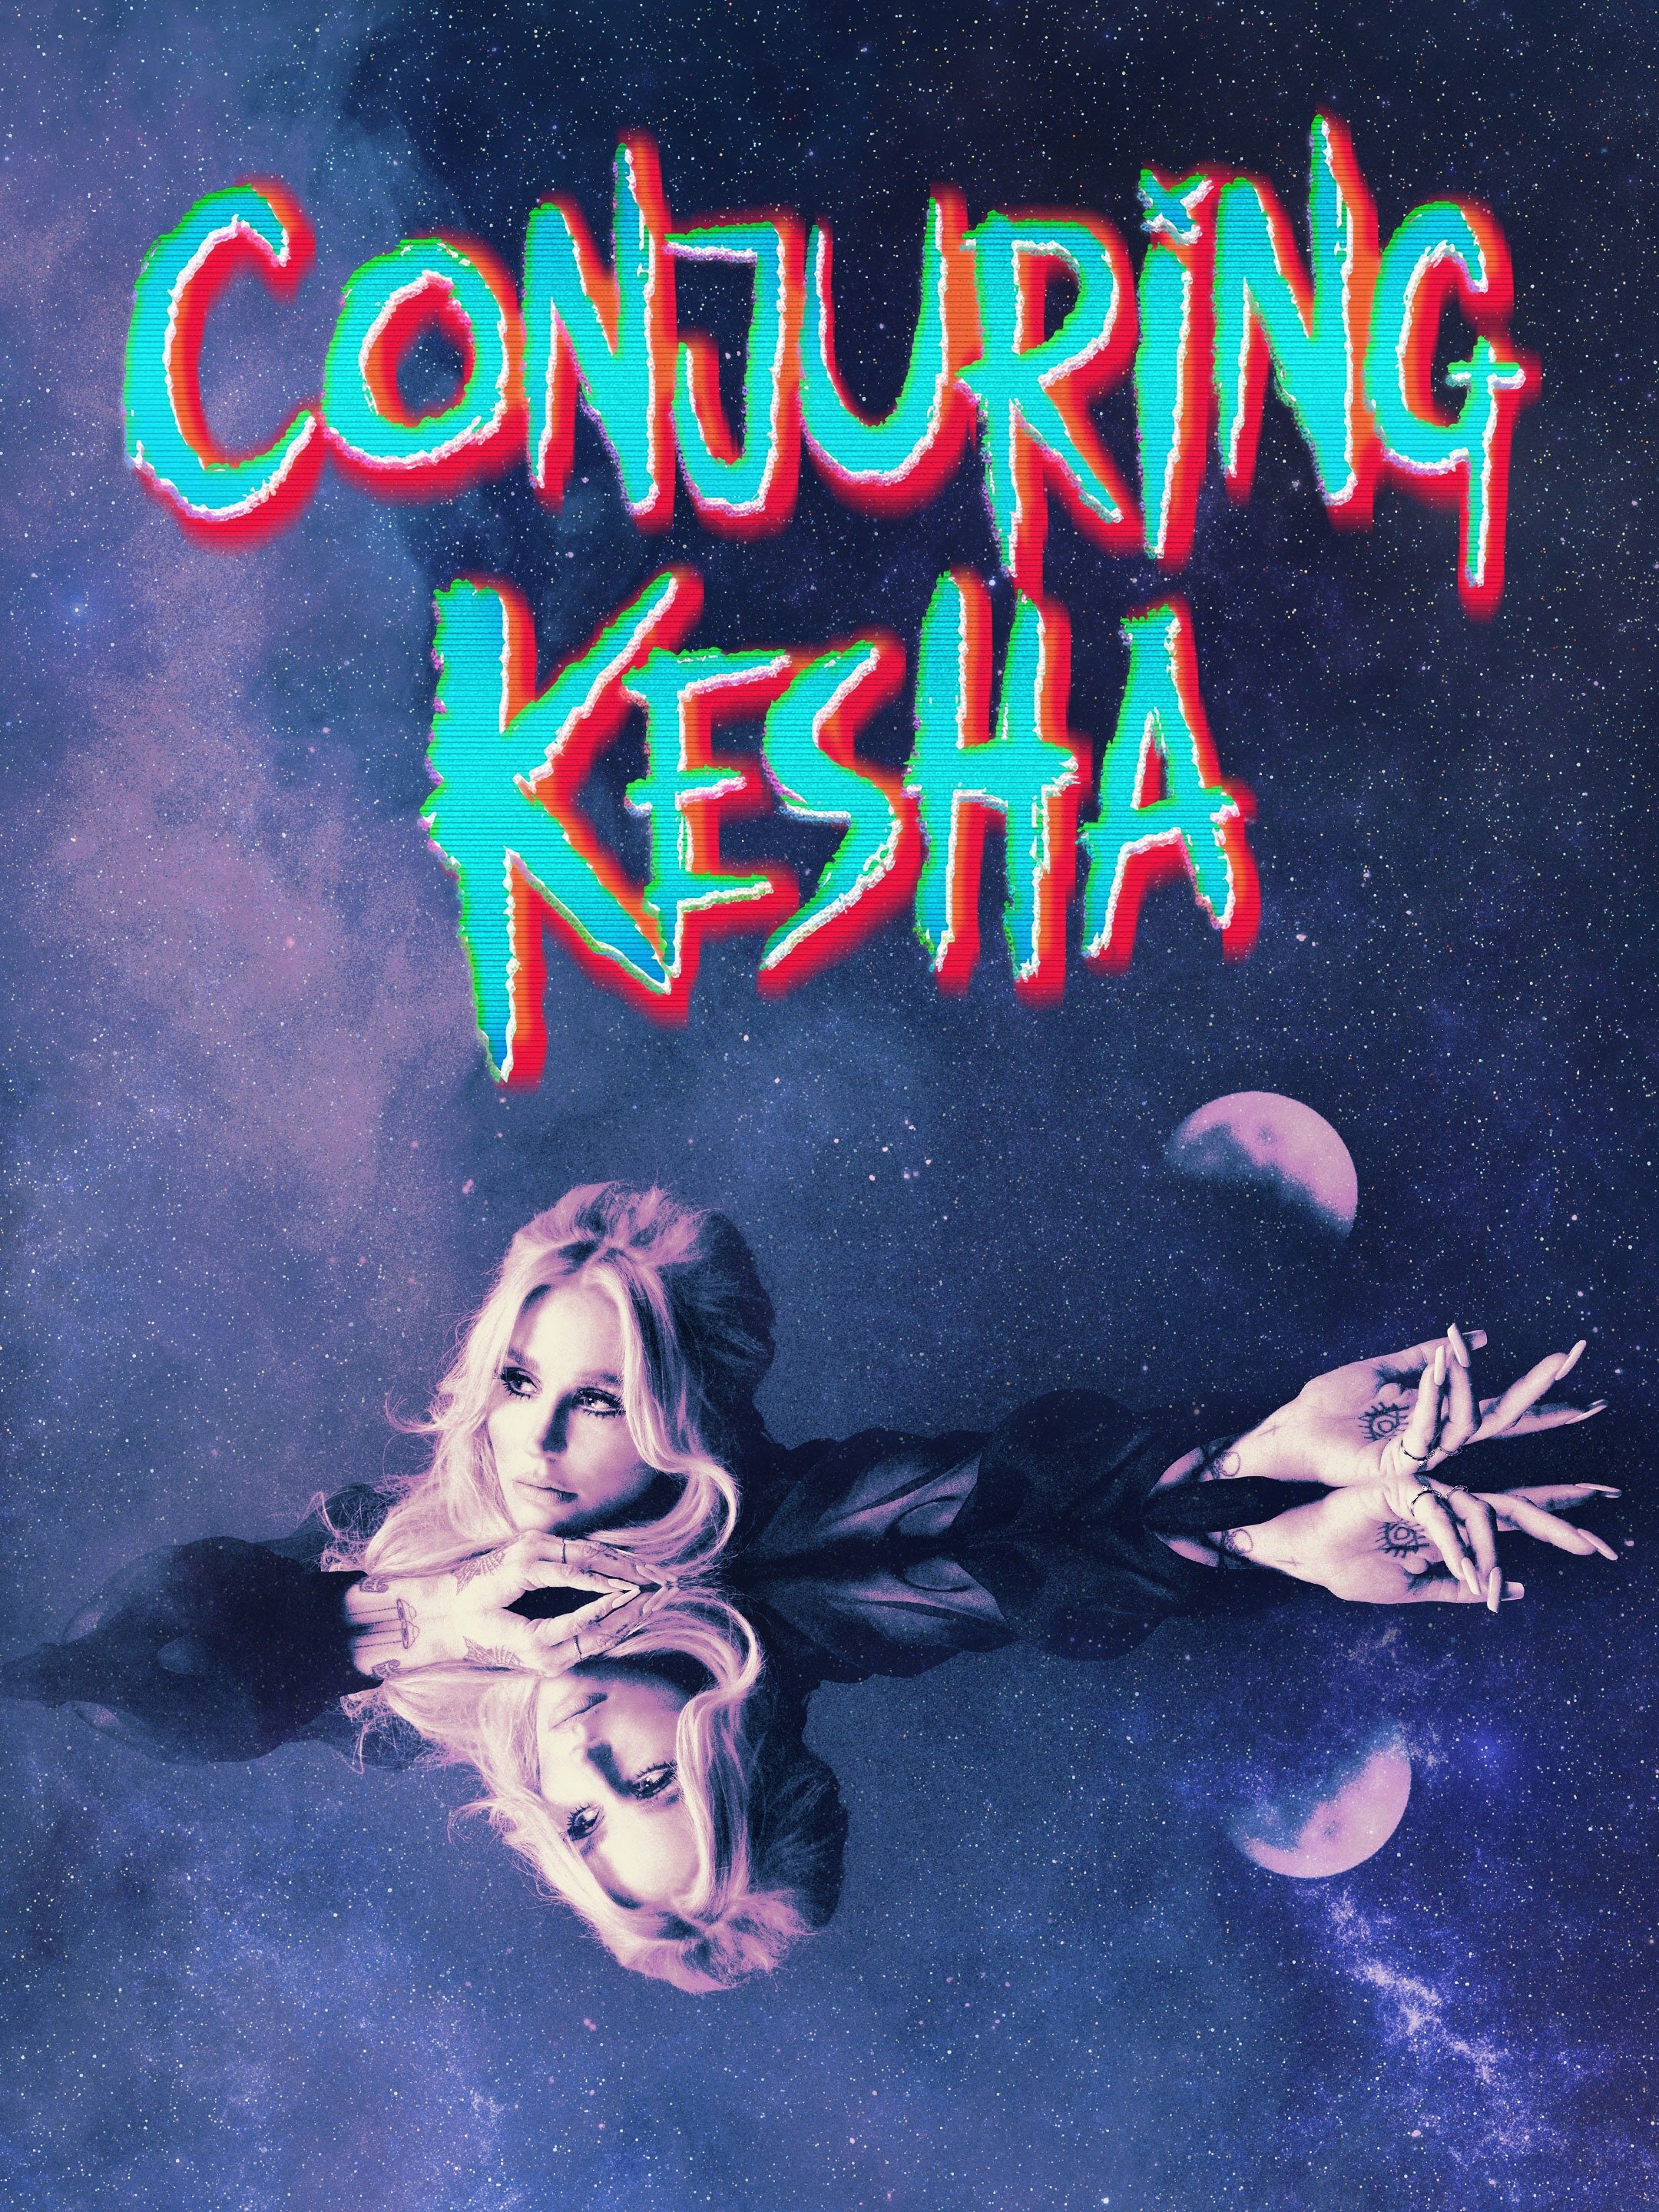 Conjuring Kesha ne zaman